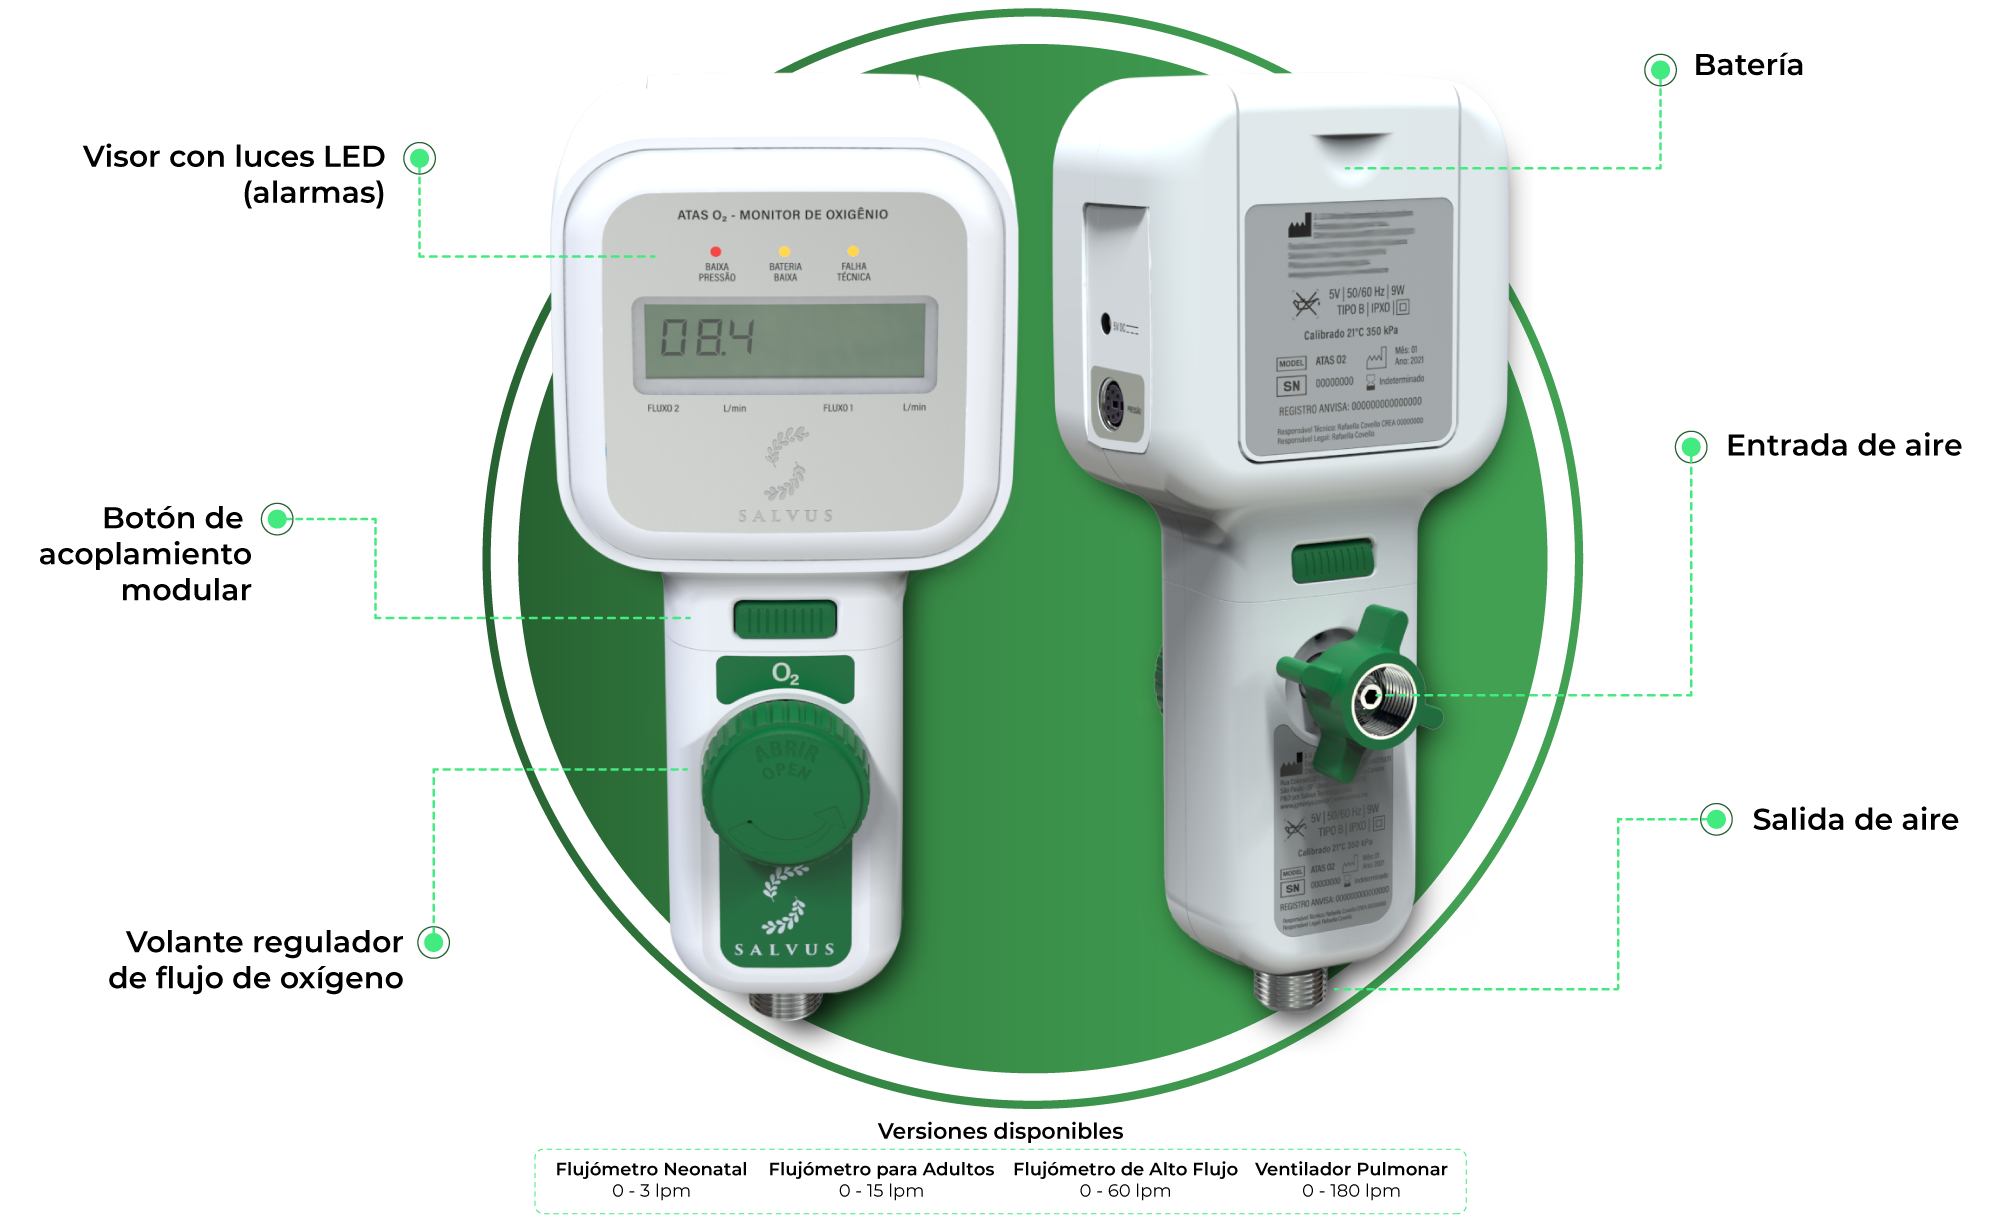 flujómetro-monitoreo-del-consumo-de-oxígeno-medicinal-automático-ataso2-salvus